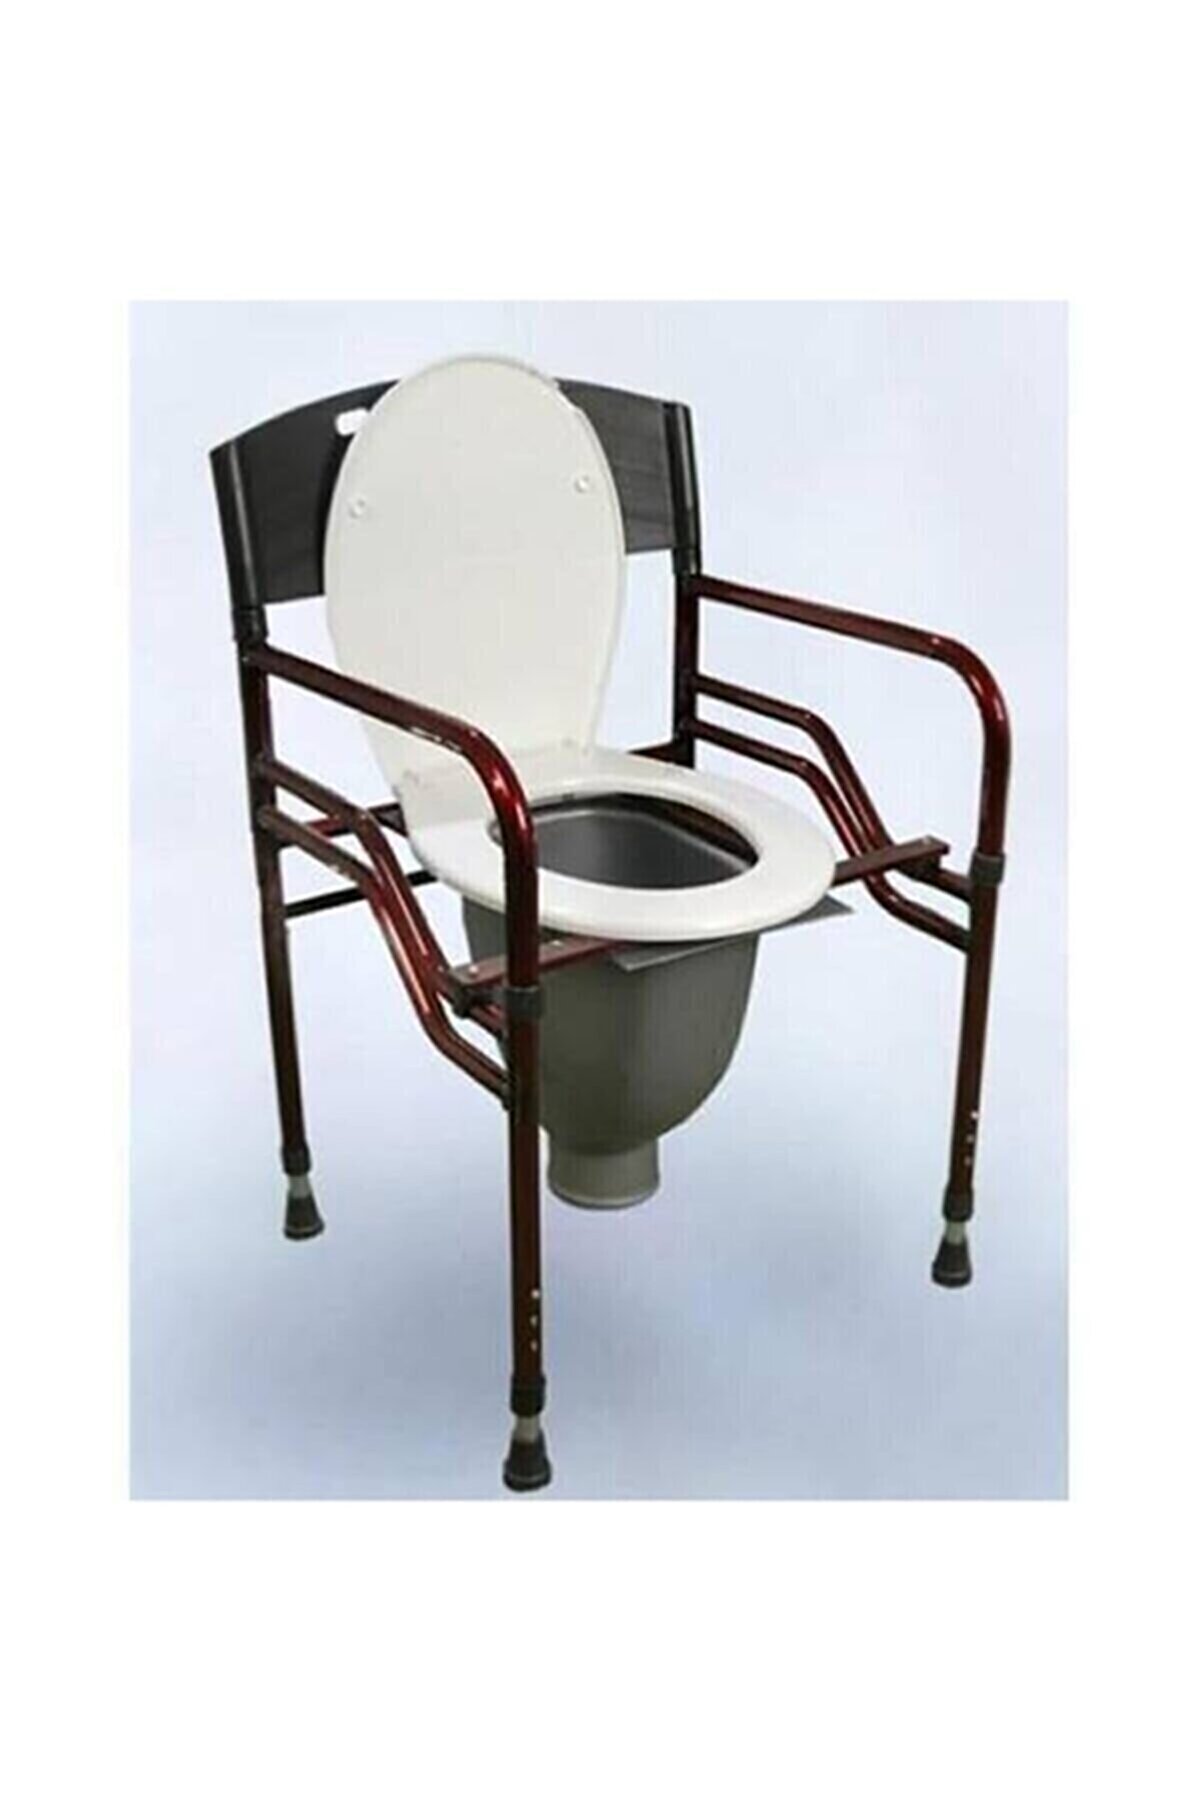 MEDİKALCİM Borulu Hasta Yaşlı Tuvalet Sandalyesi Klozeti Wc Si Direk Tuvalete Klozet direkwc